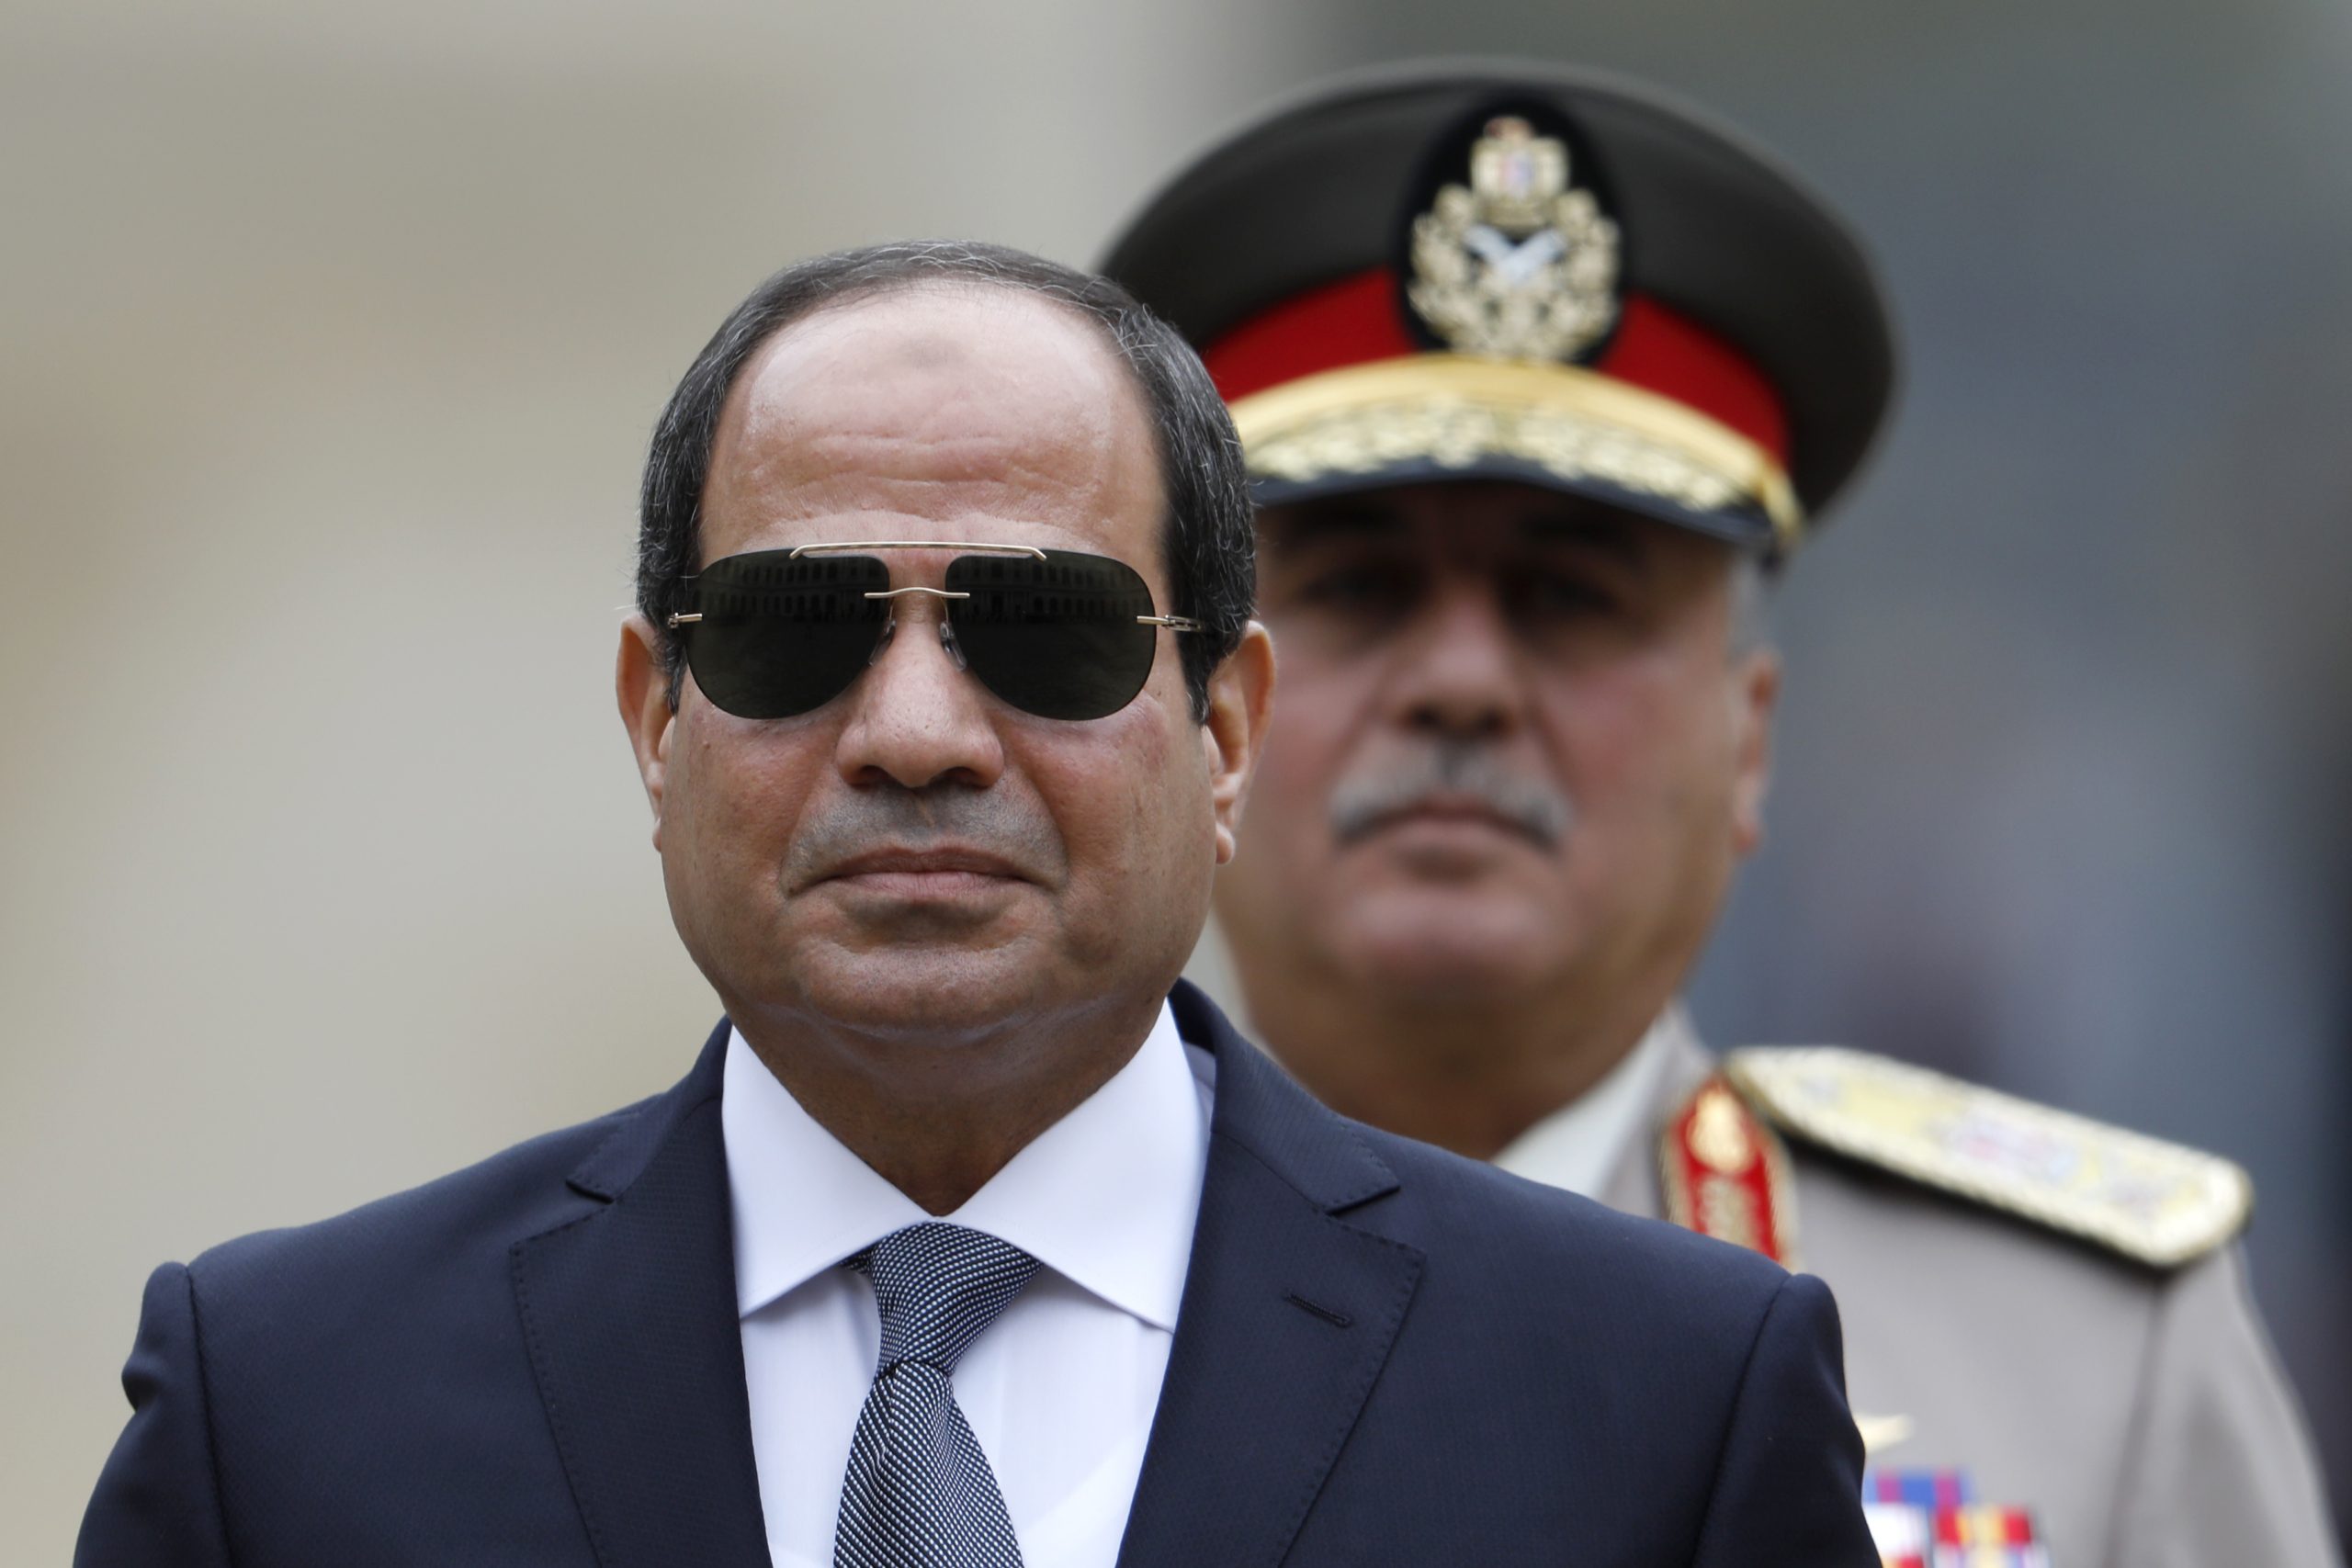 الأولى من نوعها في تاريخ مصر السيسي يصادق على قوانين عسكرية جديدة